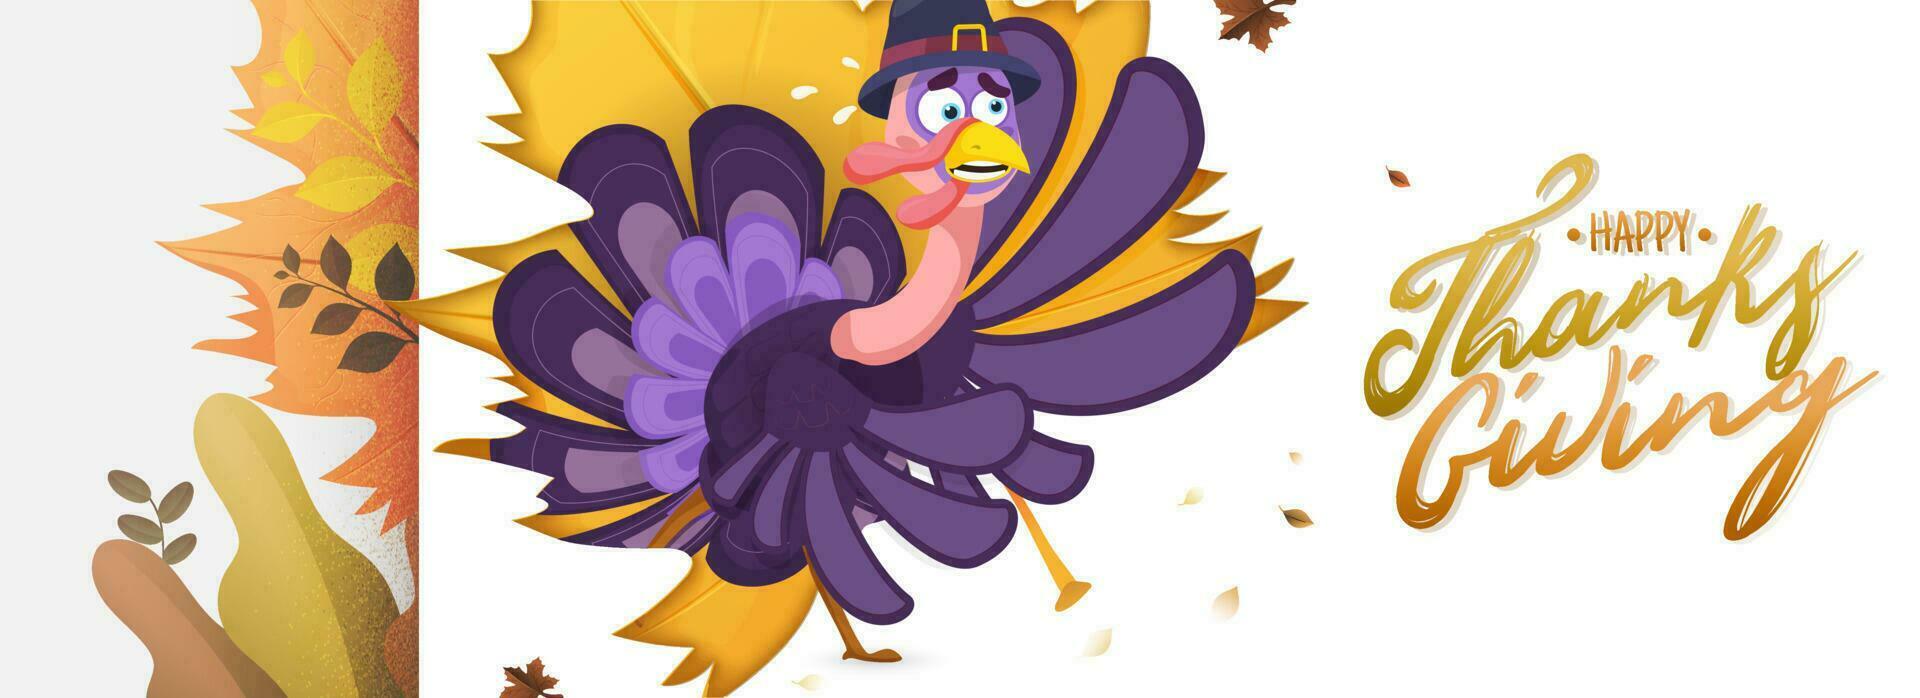 glücklich das Erntedankfest Header oder Banner Design mit Illustration von Weinen Truthahn Vogel und Herbst Blätter dekoriert auf Weiß Hintergrund. vektor